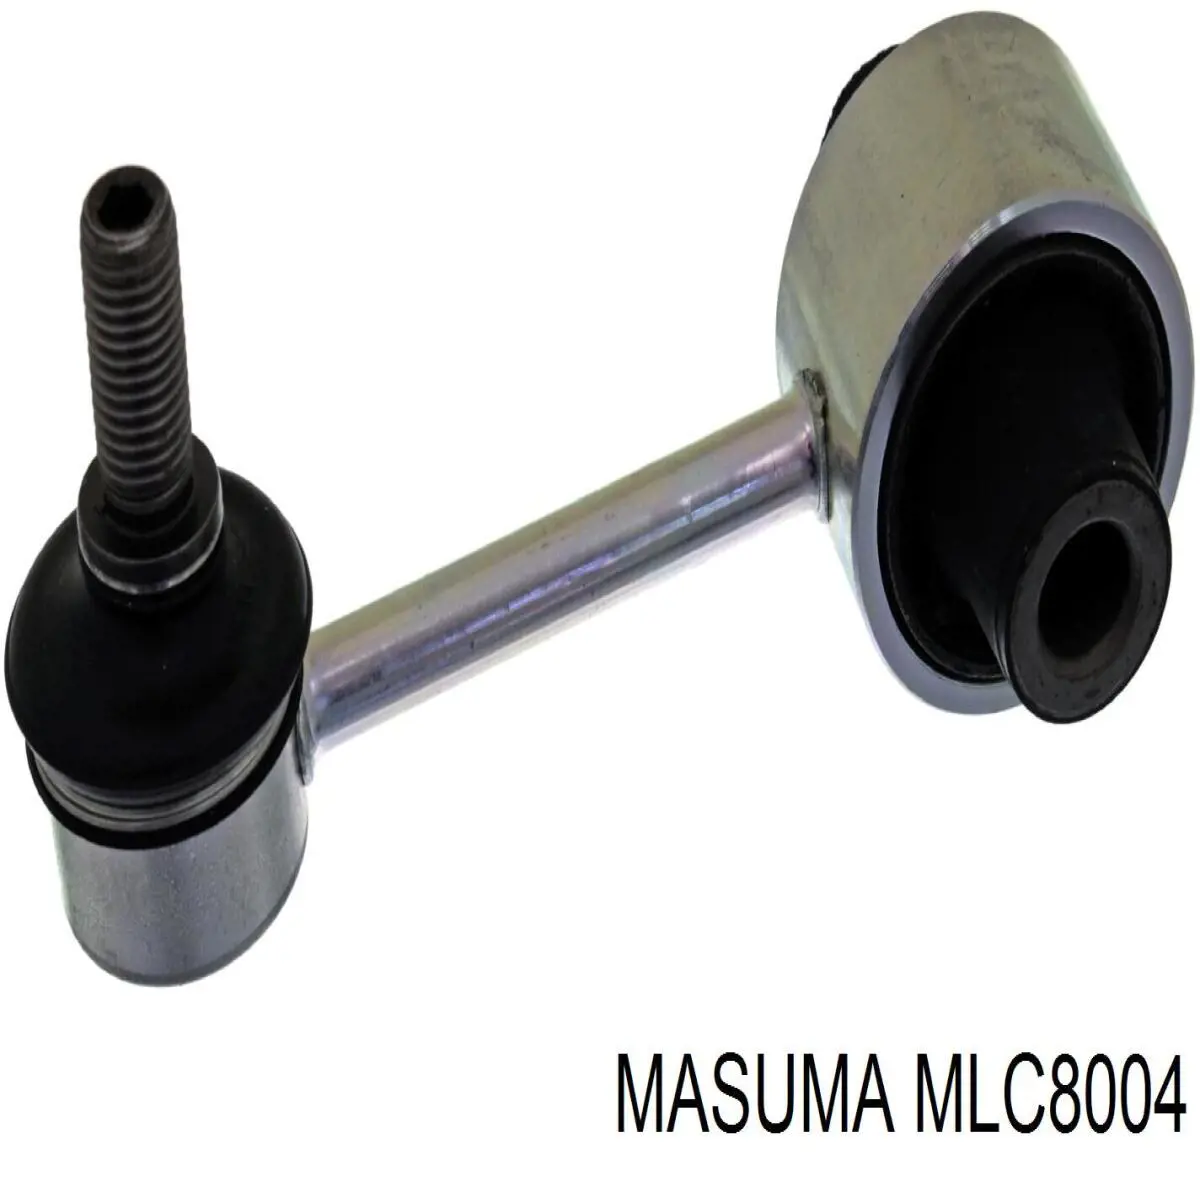 MLC8004 Masuma montante de estabilizador traseiro